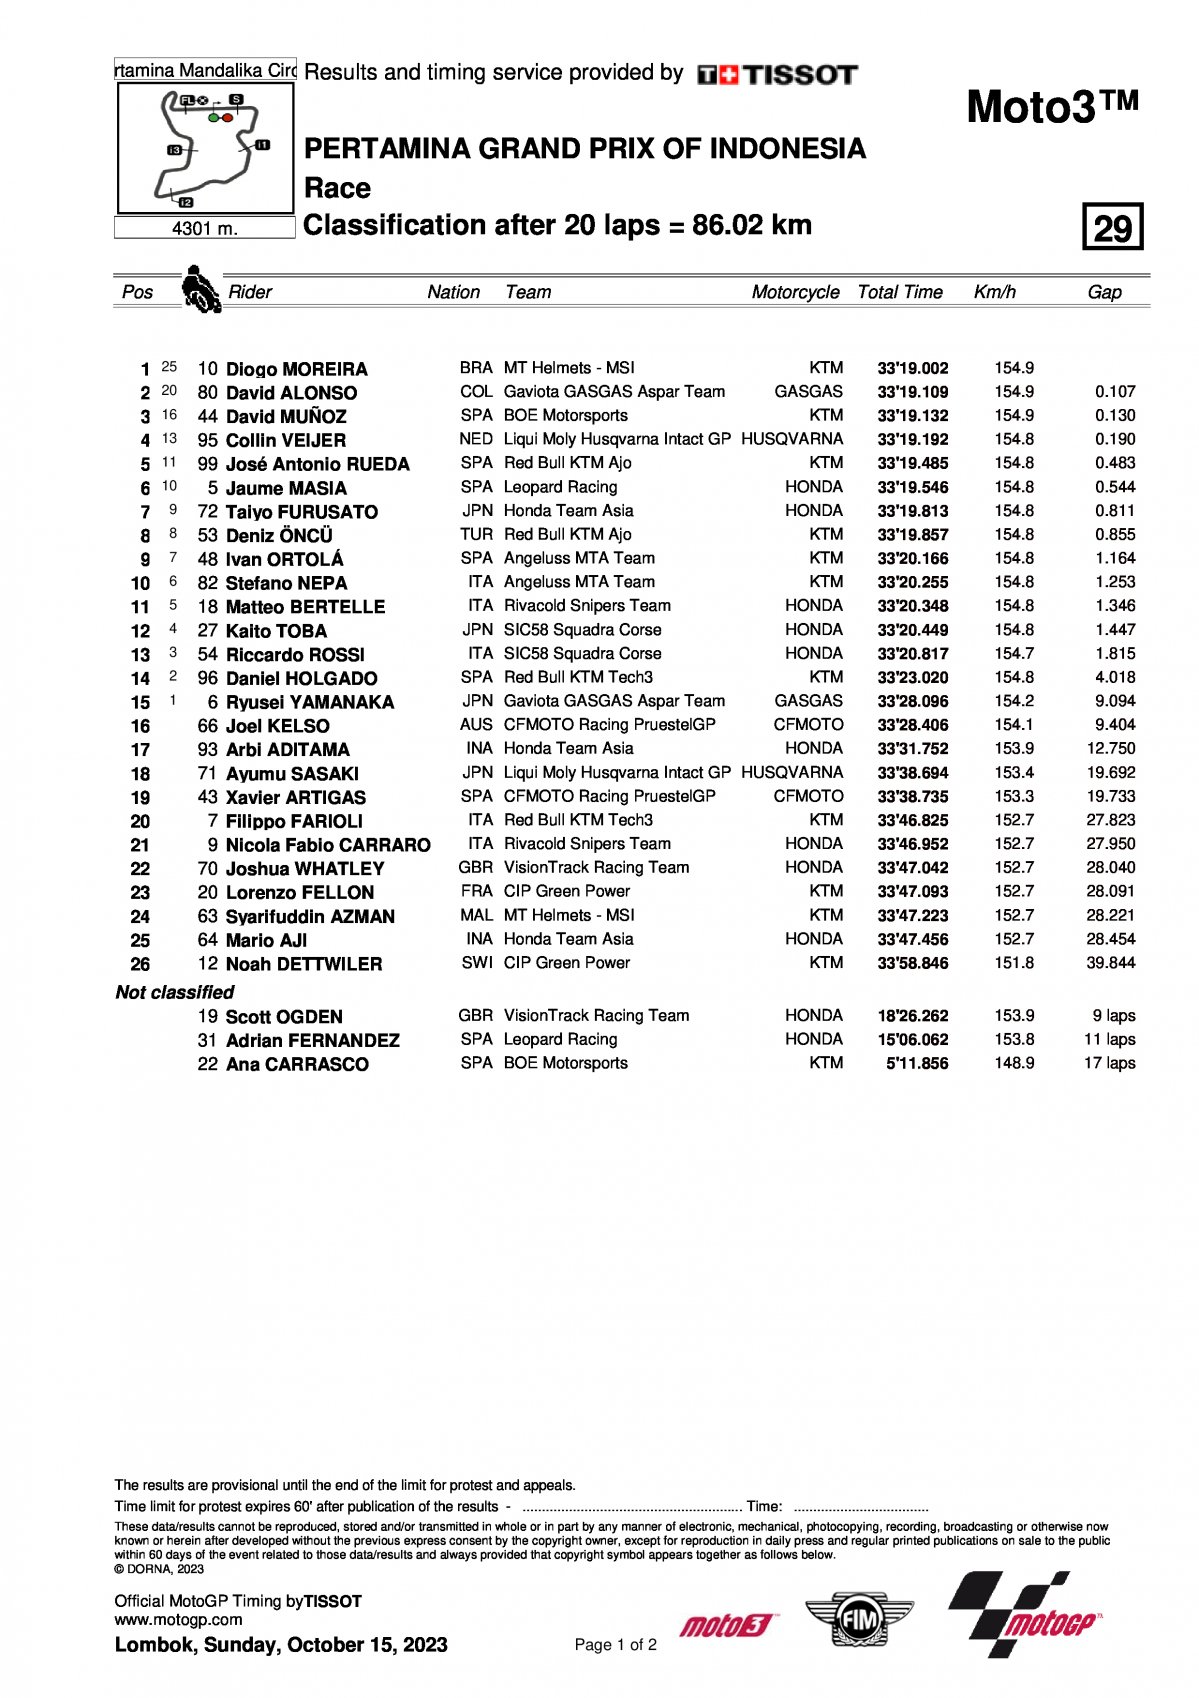 Результаты Гран-При Индонезии Moto3 (15/10/2023)